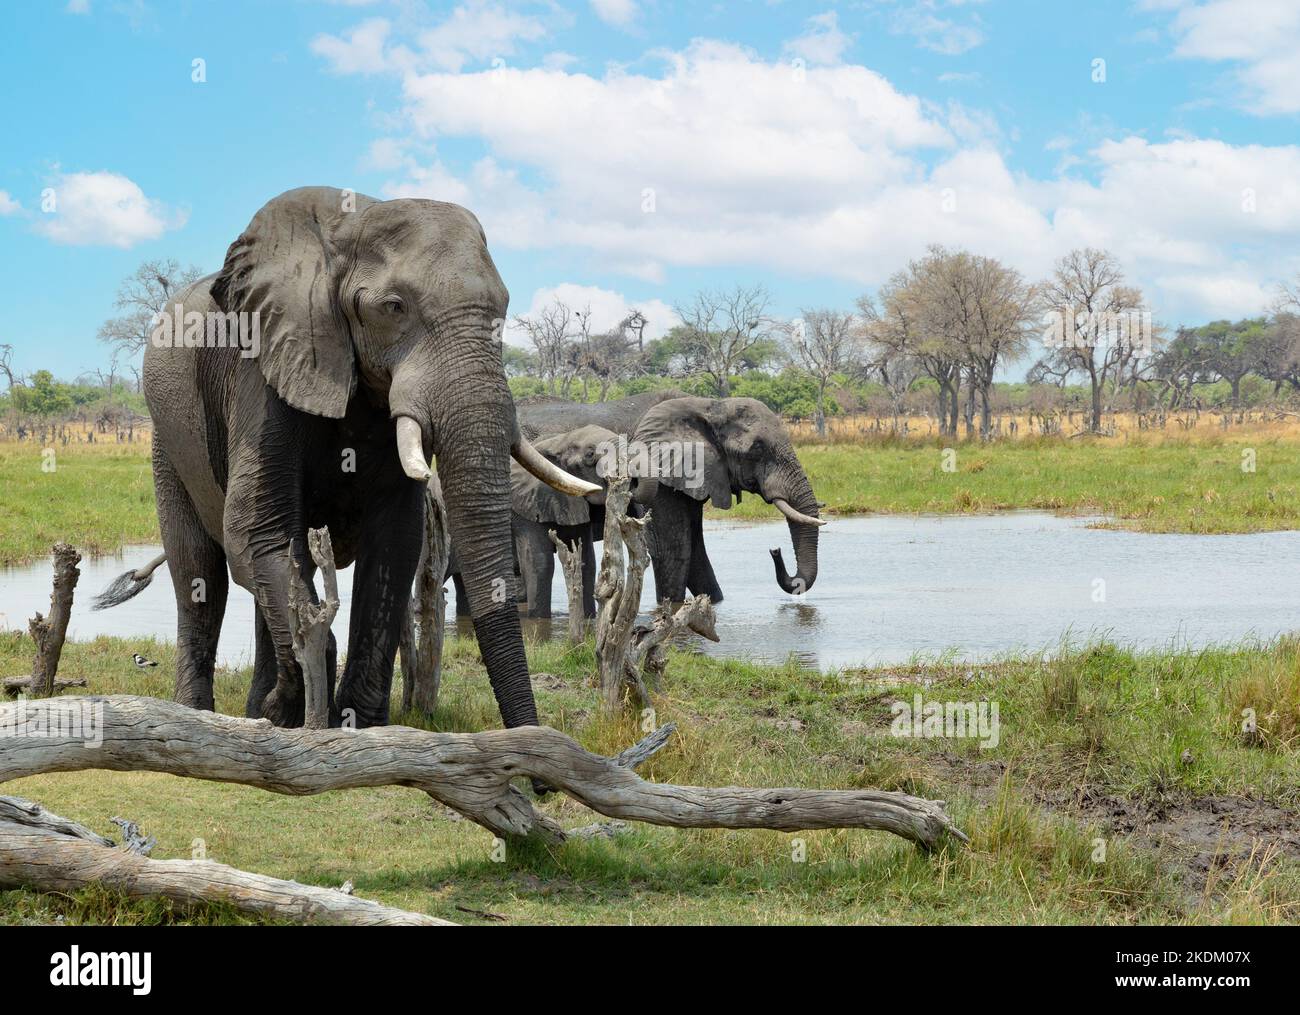 Éléphants d'Afrique Botswana. Éléphant d'Afrique, Loxodonta africana dans le delta d'Okavango, Afrique. Paysage avec animaux; Botswana Afrique. Banque D'Images